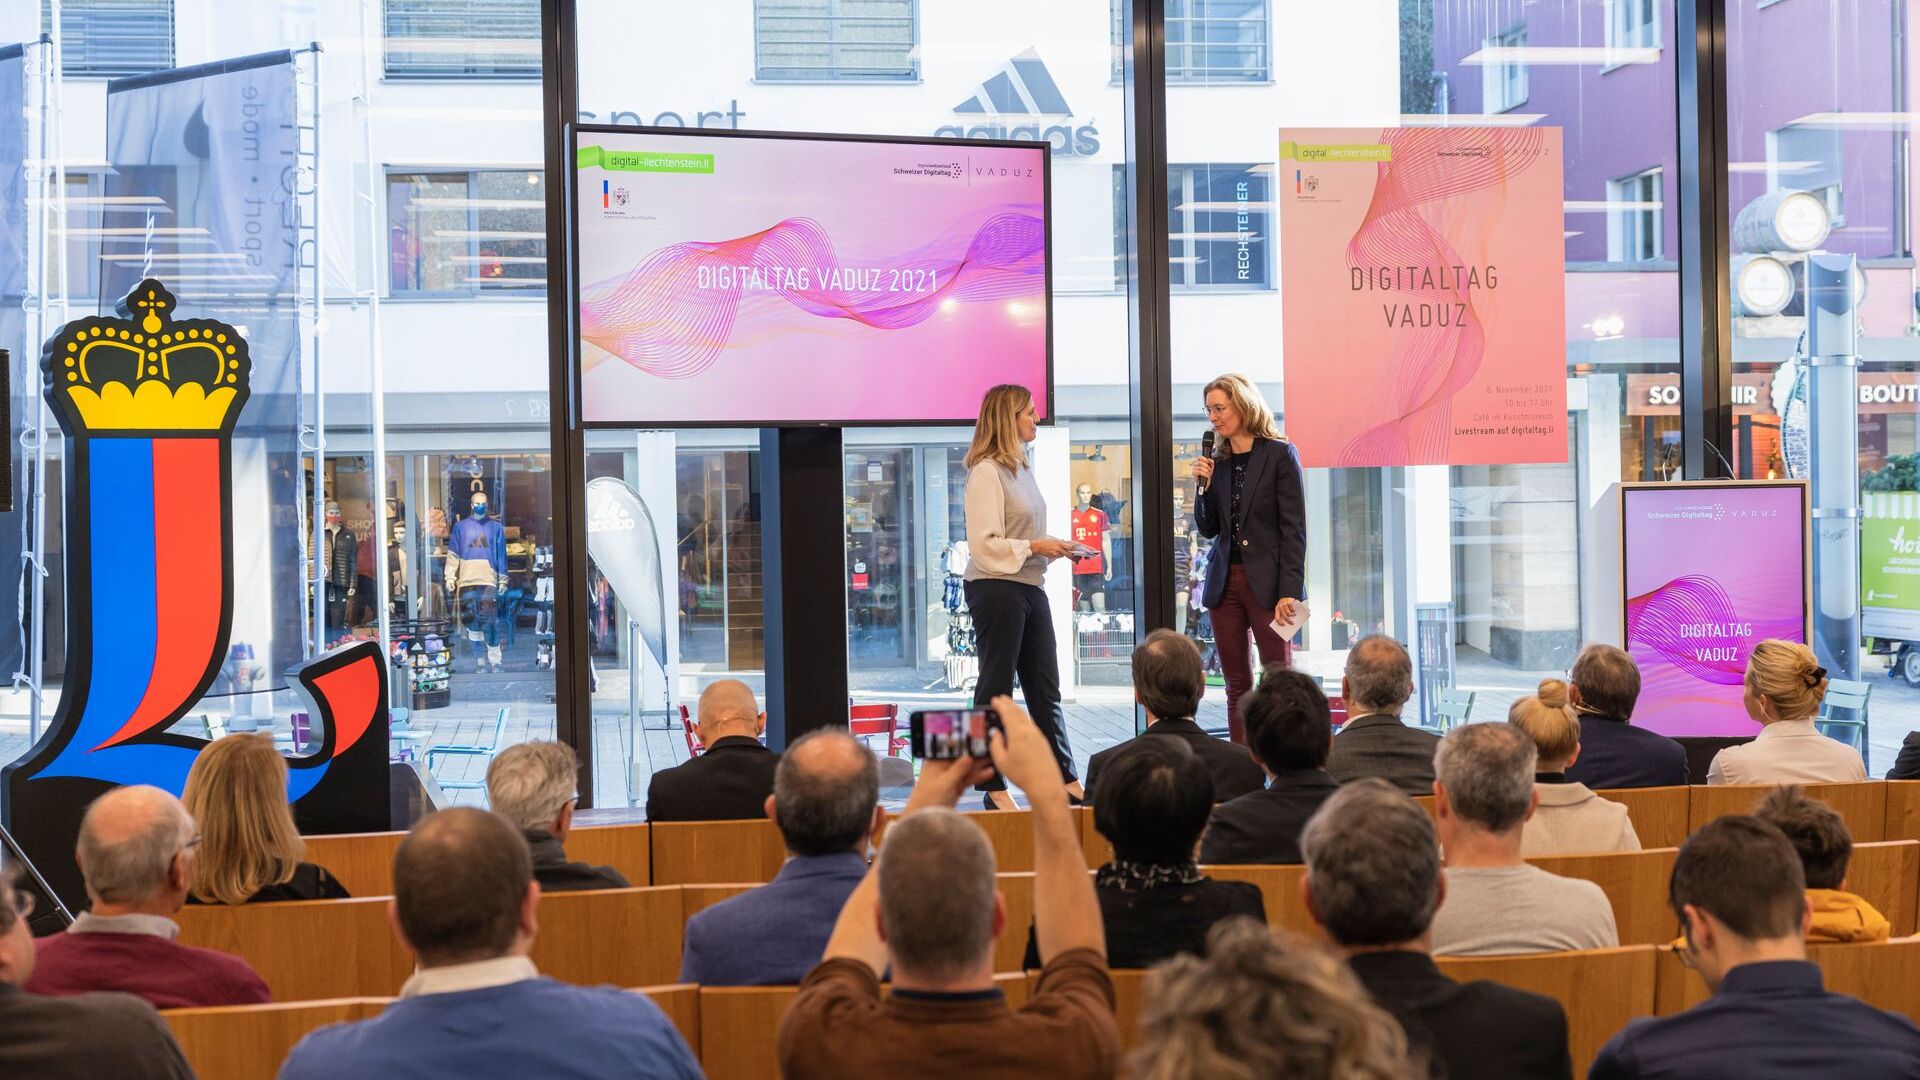 De "Digitaltag Vaduz", verwelkomd door het Kunstmuseum van de hoofdstad van het Vorstendom Liechtenstein op zaterdag 6 november 2021, wekte het enthousiasme van het publiek en de sprekers naar analogie van de "Swiss Digital Day" van de volgende dag 10: de tussenkomst van vicepremier Sabine Mounani